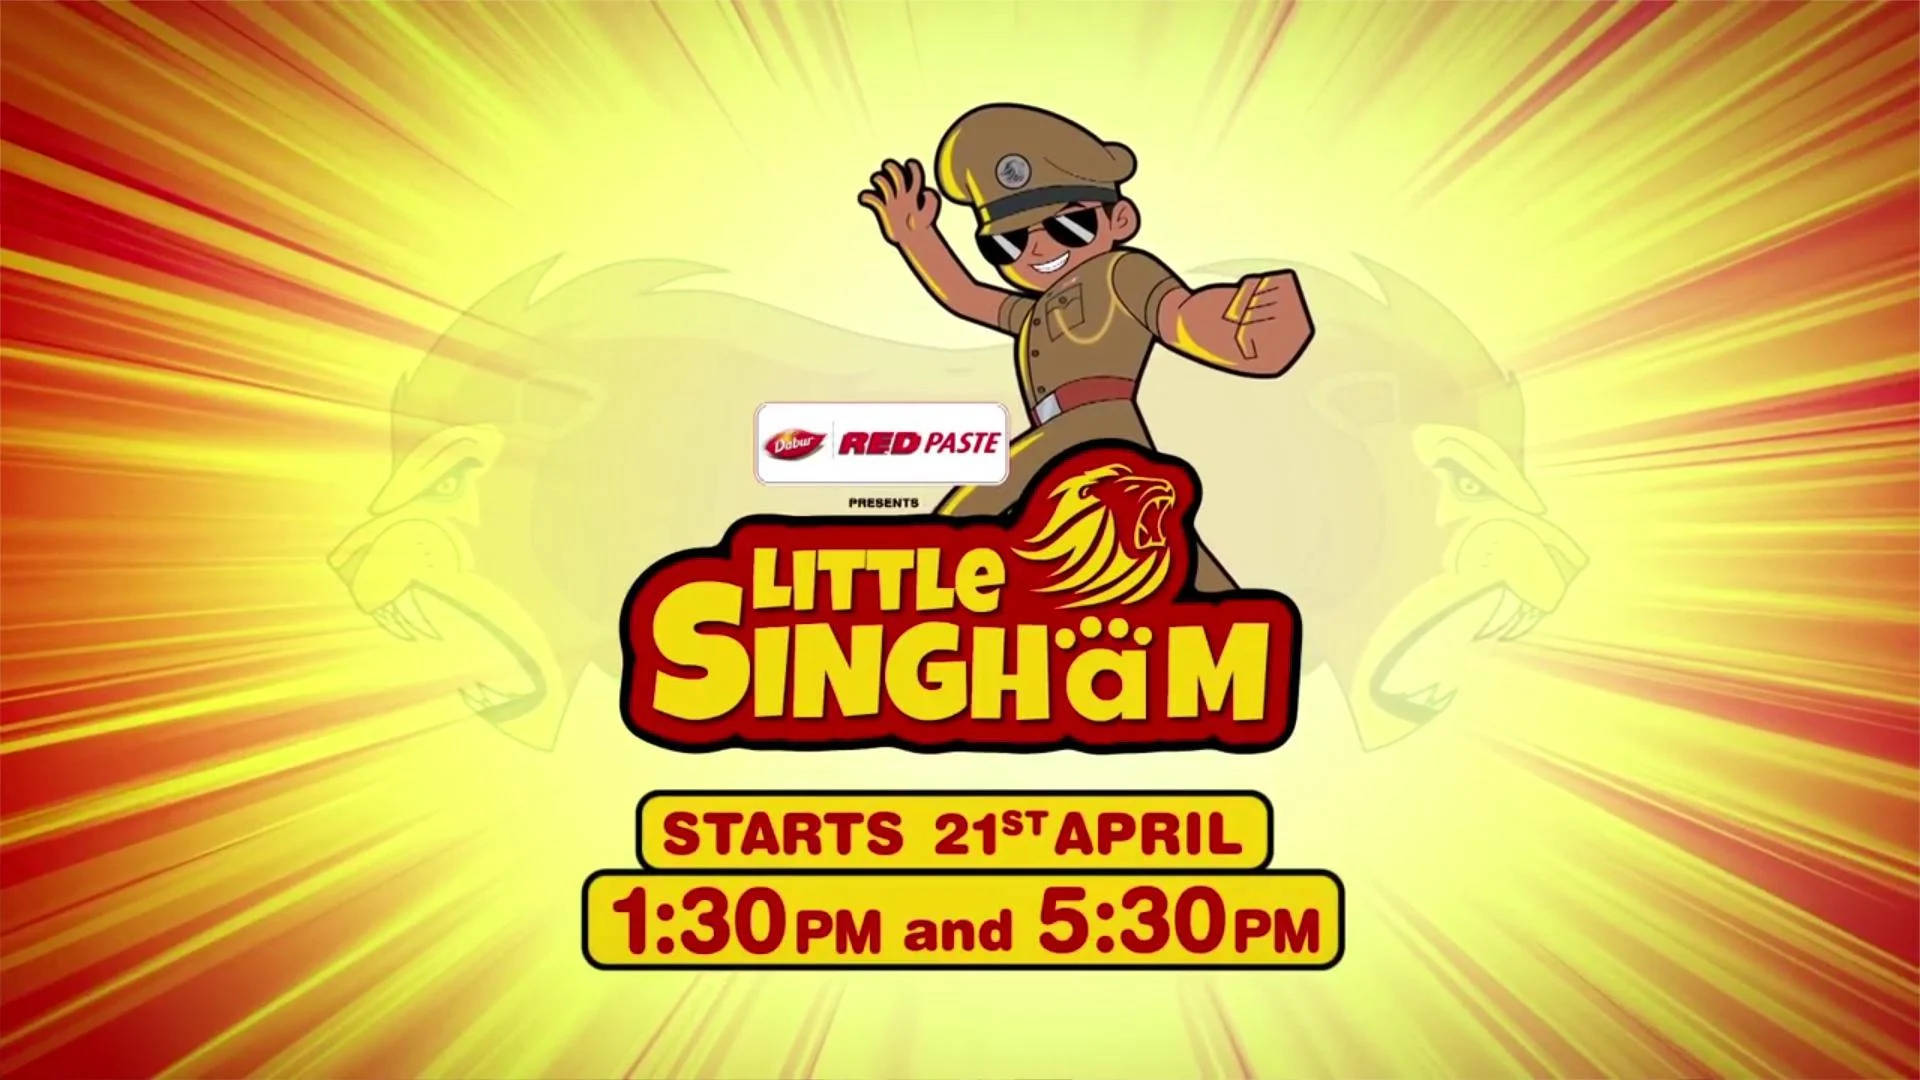 Download Little Singham Show Schedule Wallpaper 